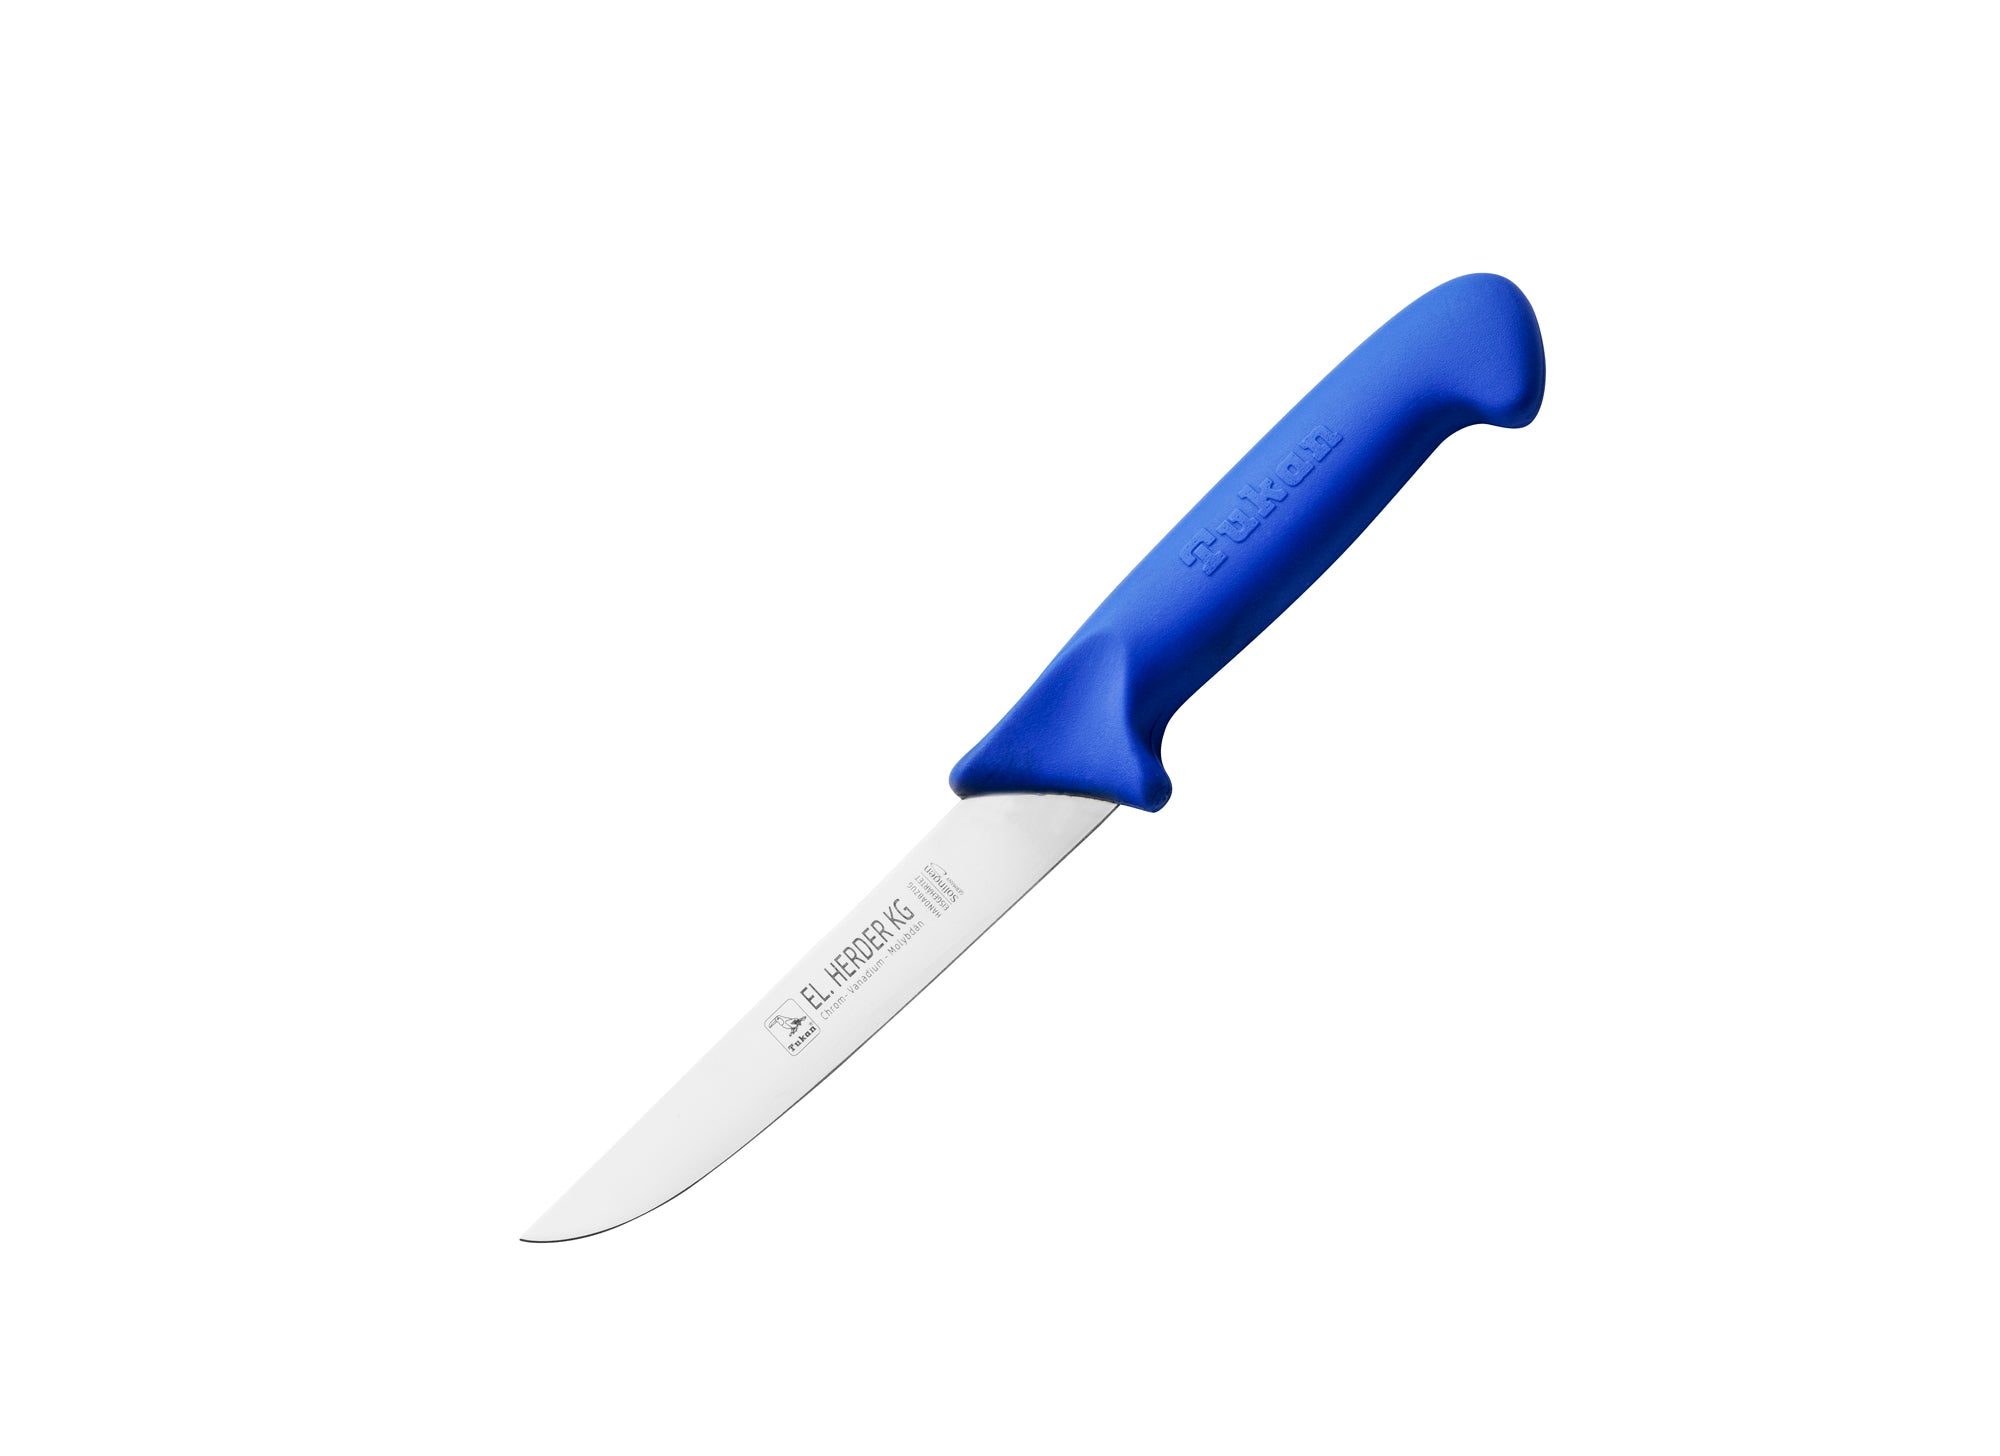 Couteau boucher Panter, convient à la perfection pour les bouchers !